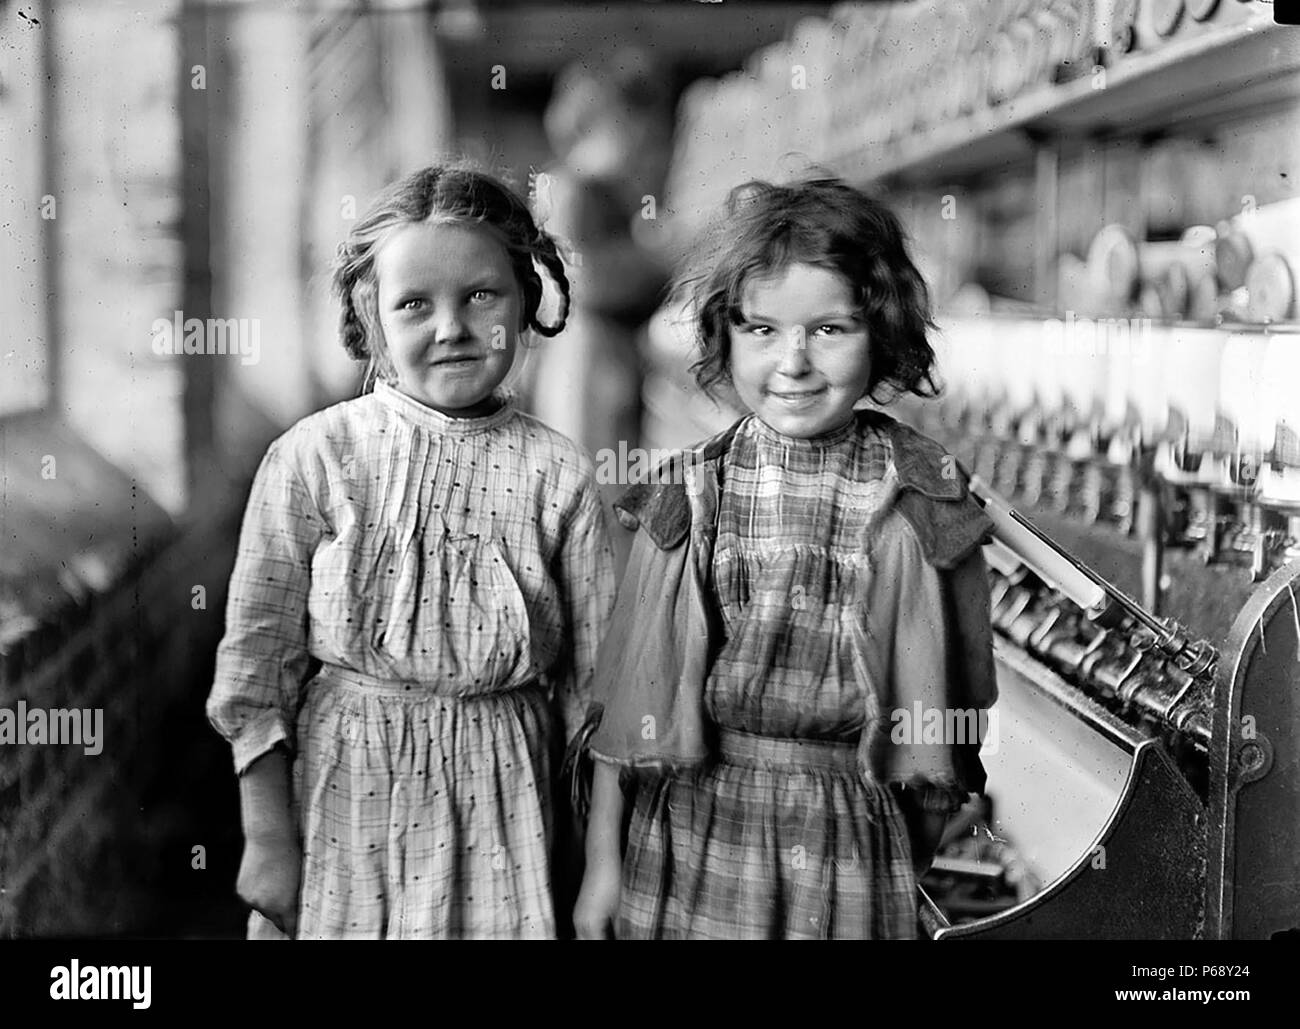 Photo de deux enfants travailleurs, un raveler et un looper, travaillant dans les usines de coton, Tifton USA. Datée 1910 Banque D'Images